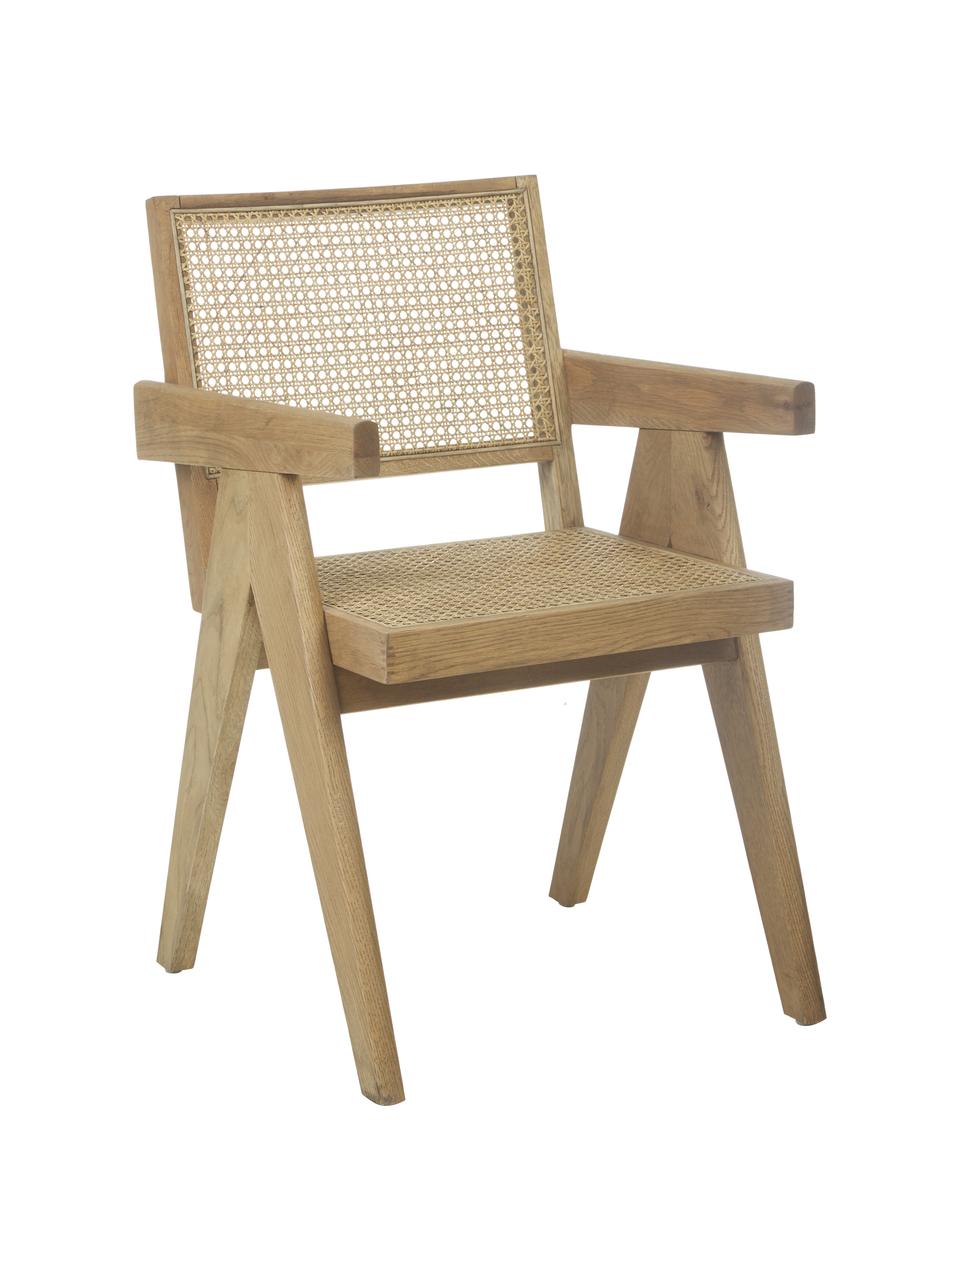 Stolička s opierkami s viedenským výpletom Sissi, Svetlé drevo, B 52 x T 58 cm